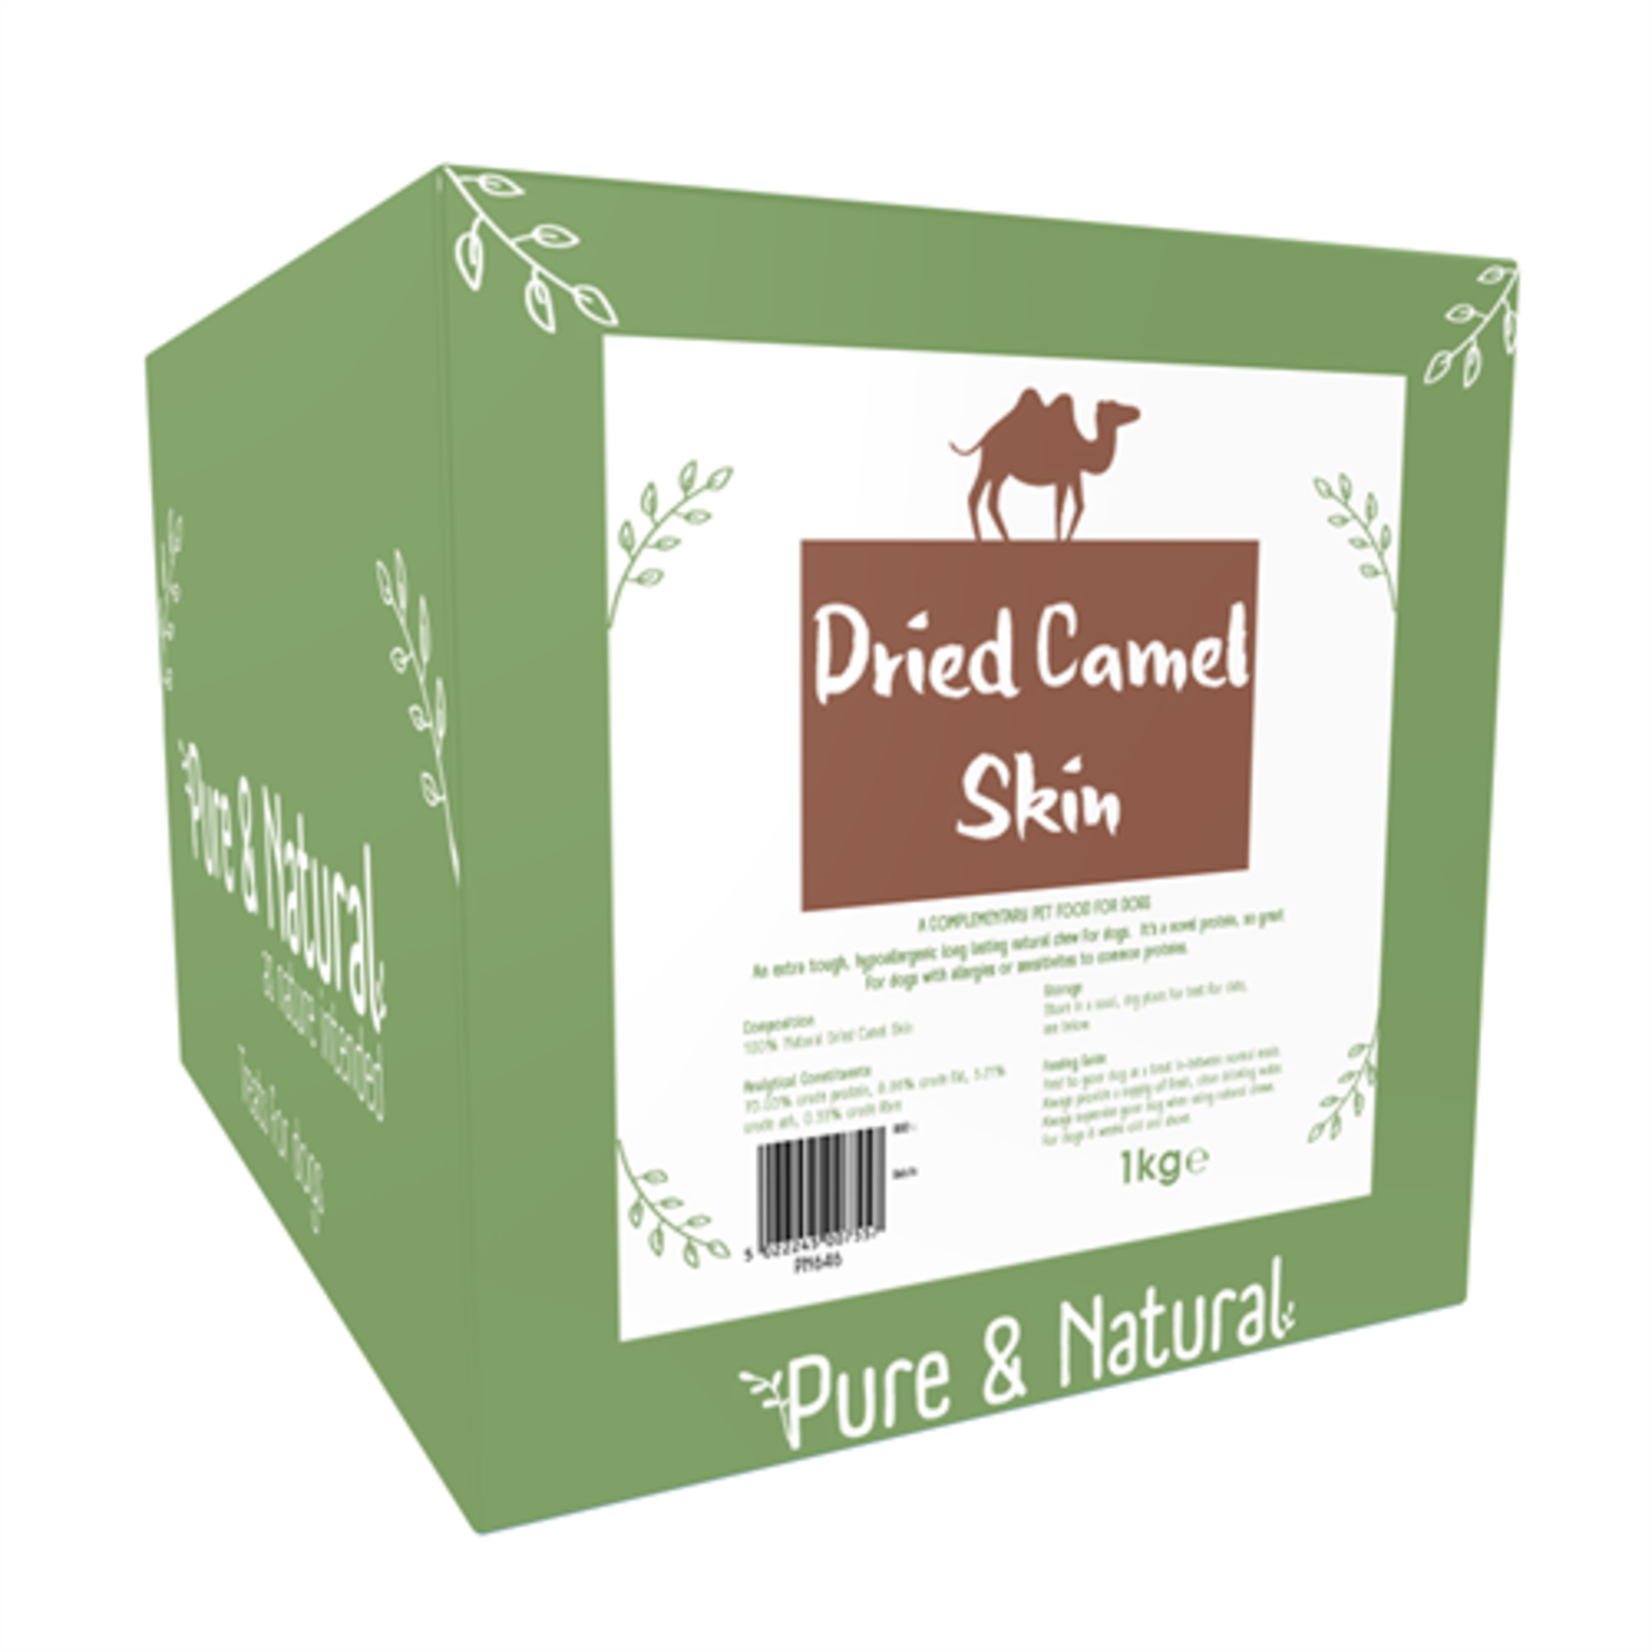 Pure & Natural Camel Skin Dog Treats, 1kg Box